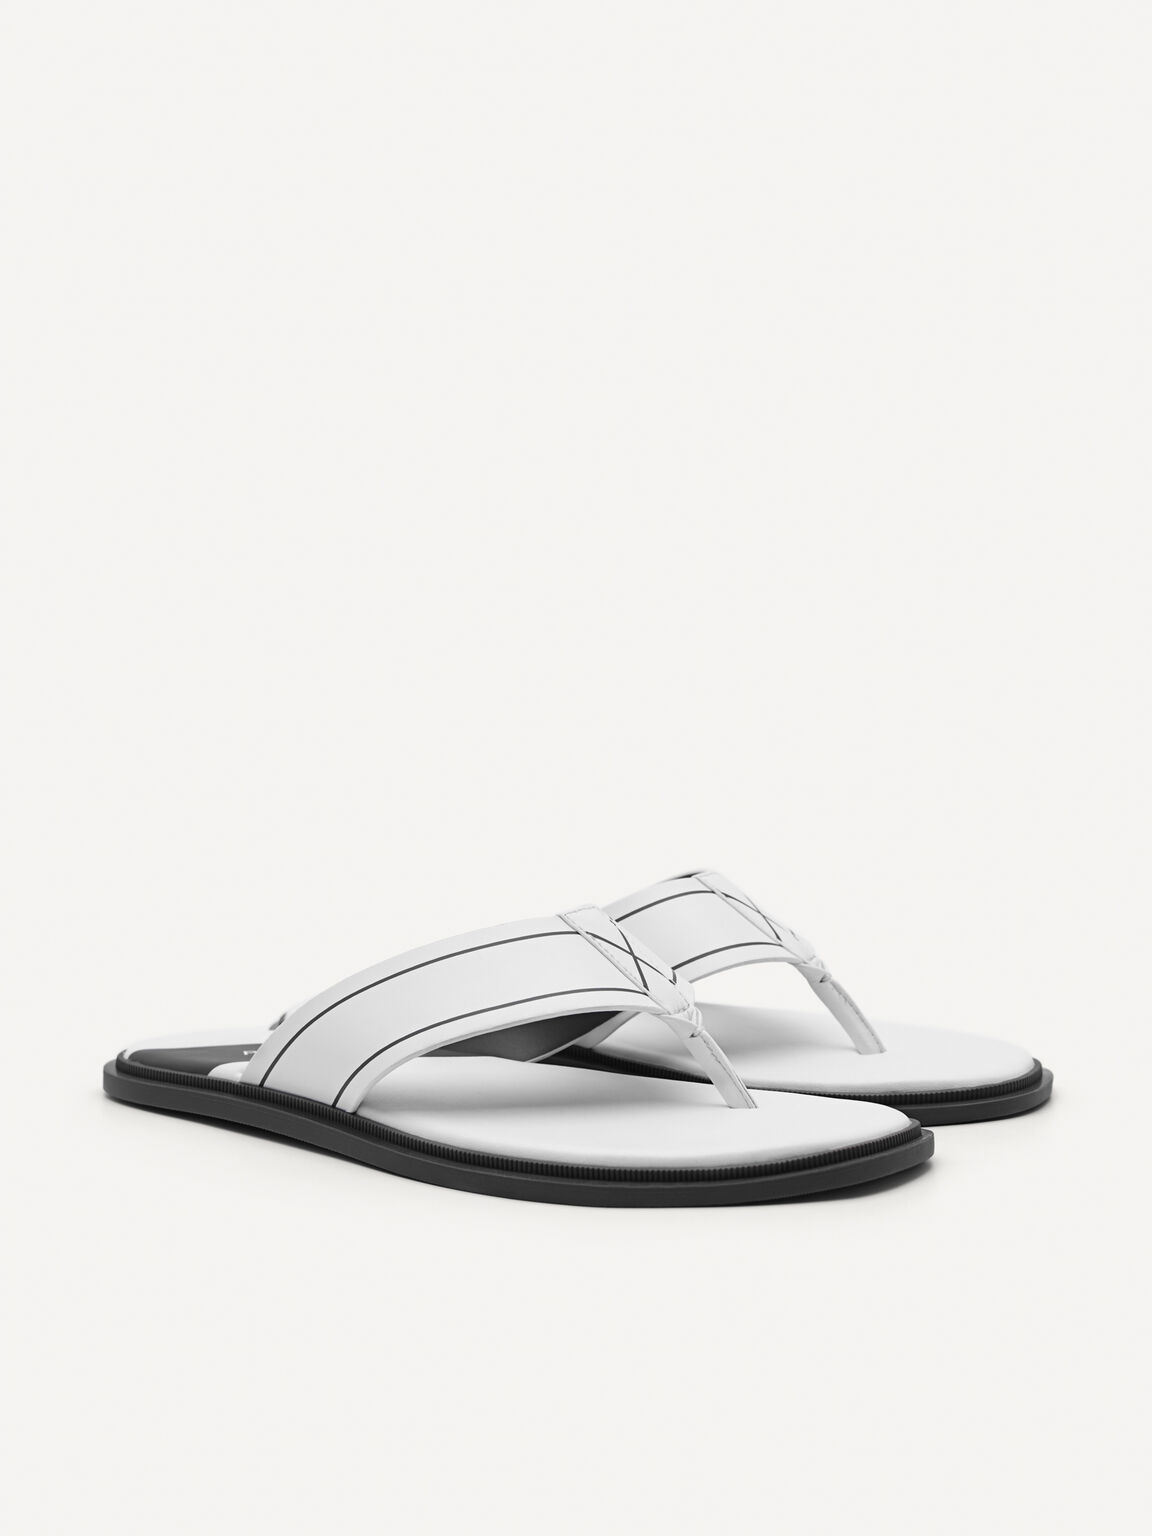 Flex Sandals, White